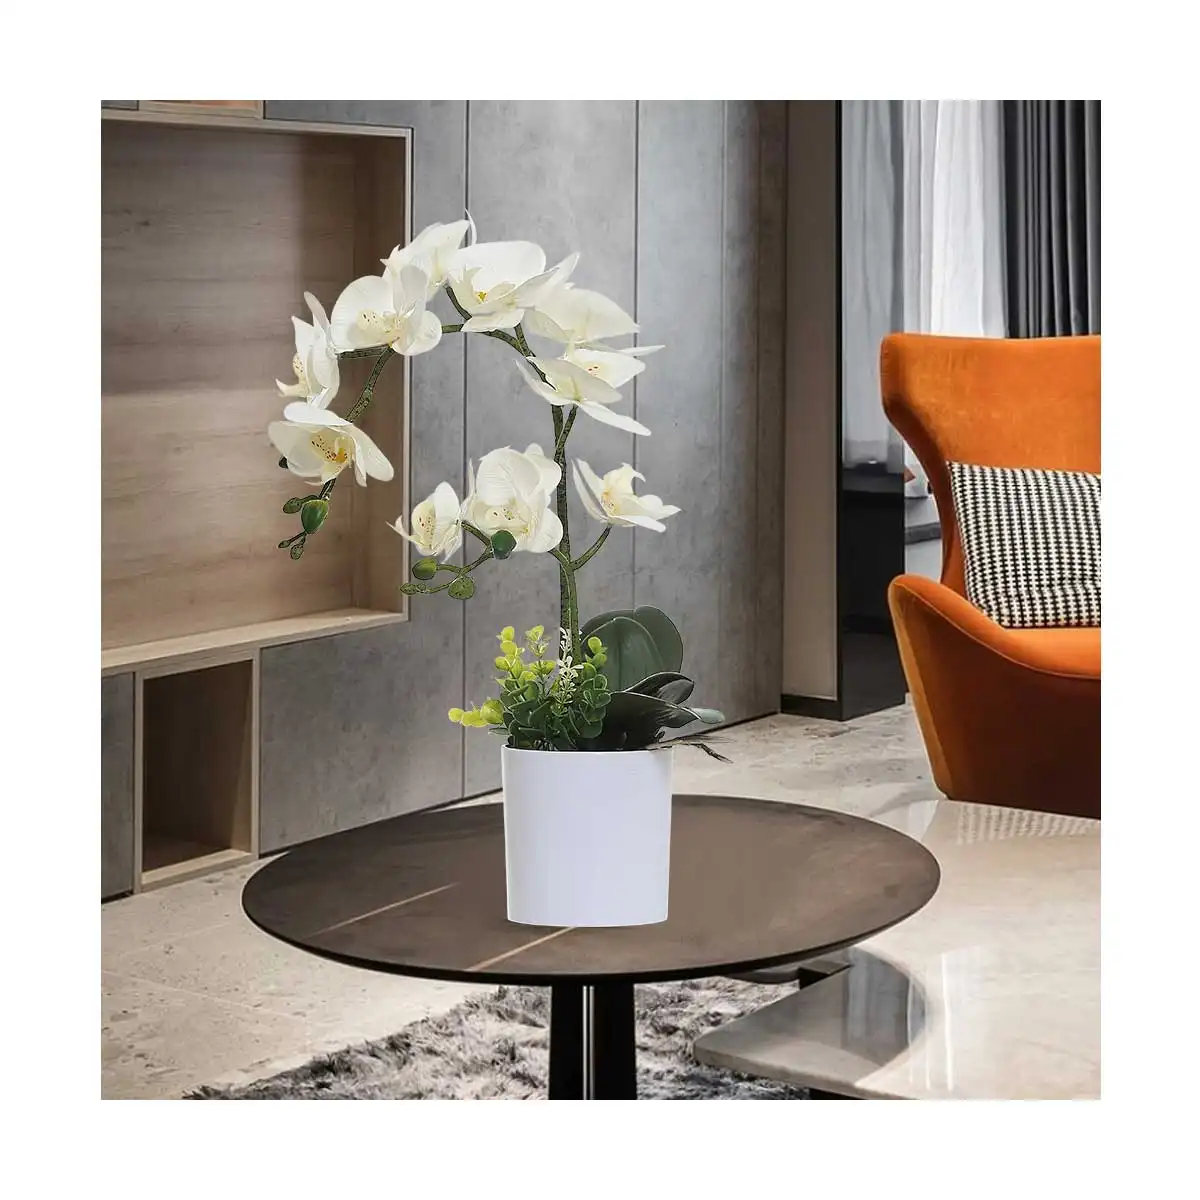 3D impresión realista 7 cabezas artificial phalaenopsis flor Acuerdo con florero blanco para decoración de boda